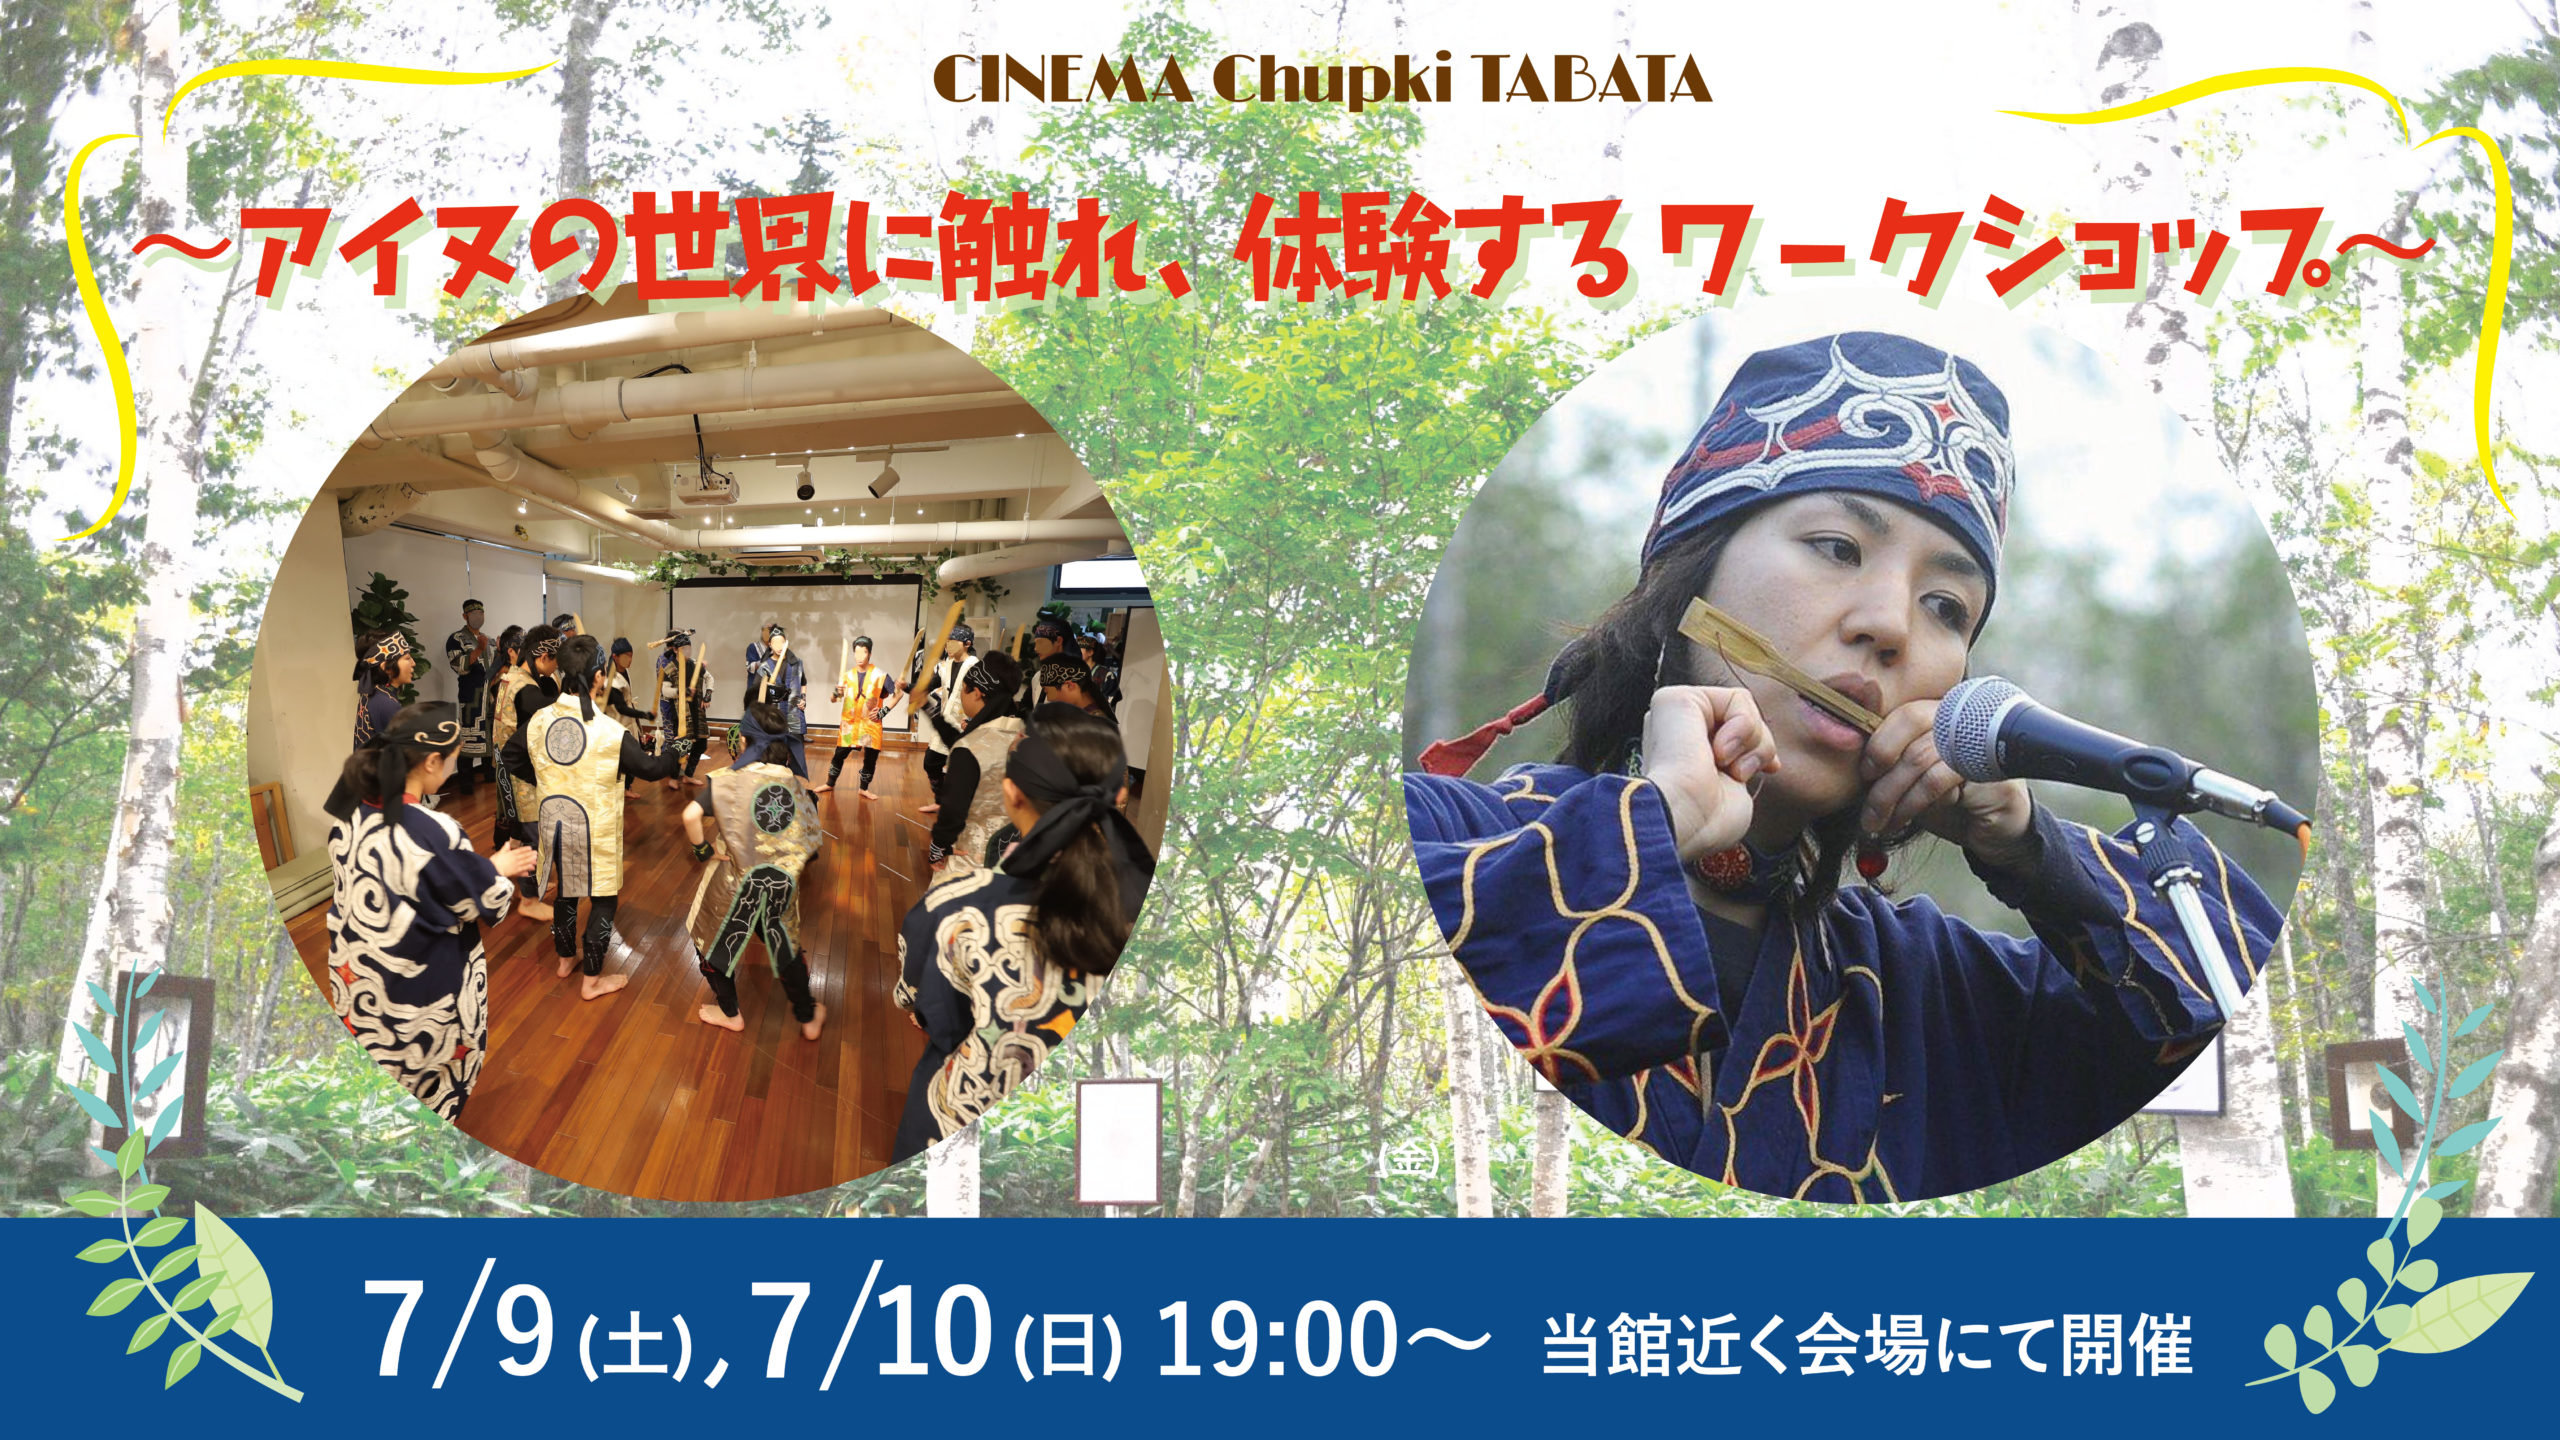 7月9日 10日アイヌの世界に触れ 体験するワークショップを開催します Cinema Chupki Tabatacinema Chupki Tabata